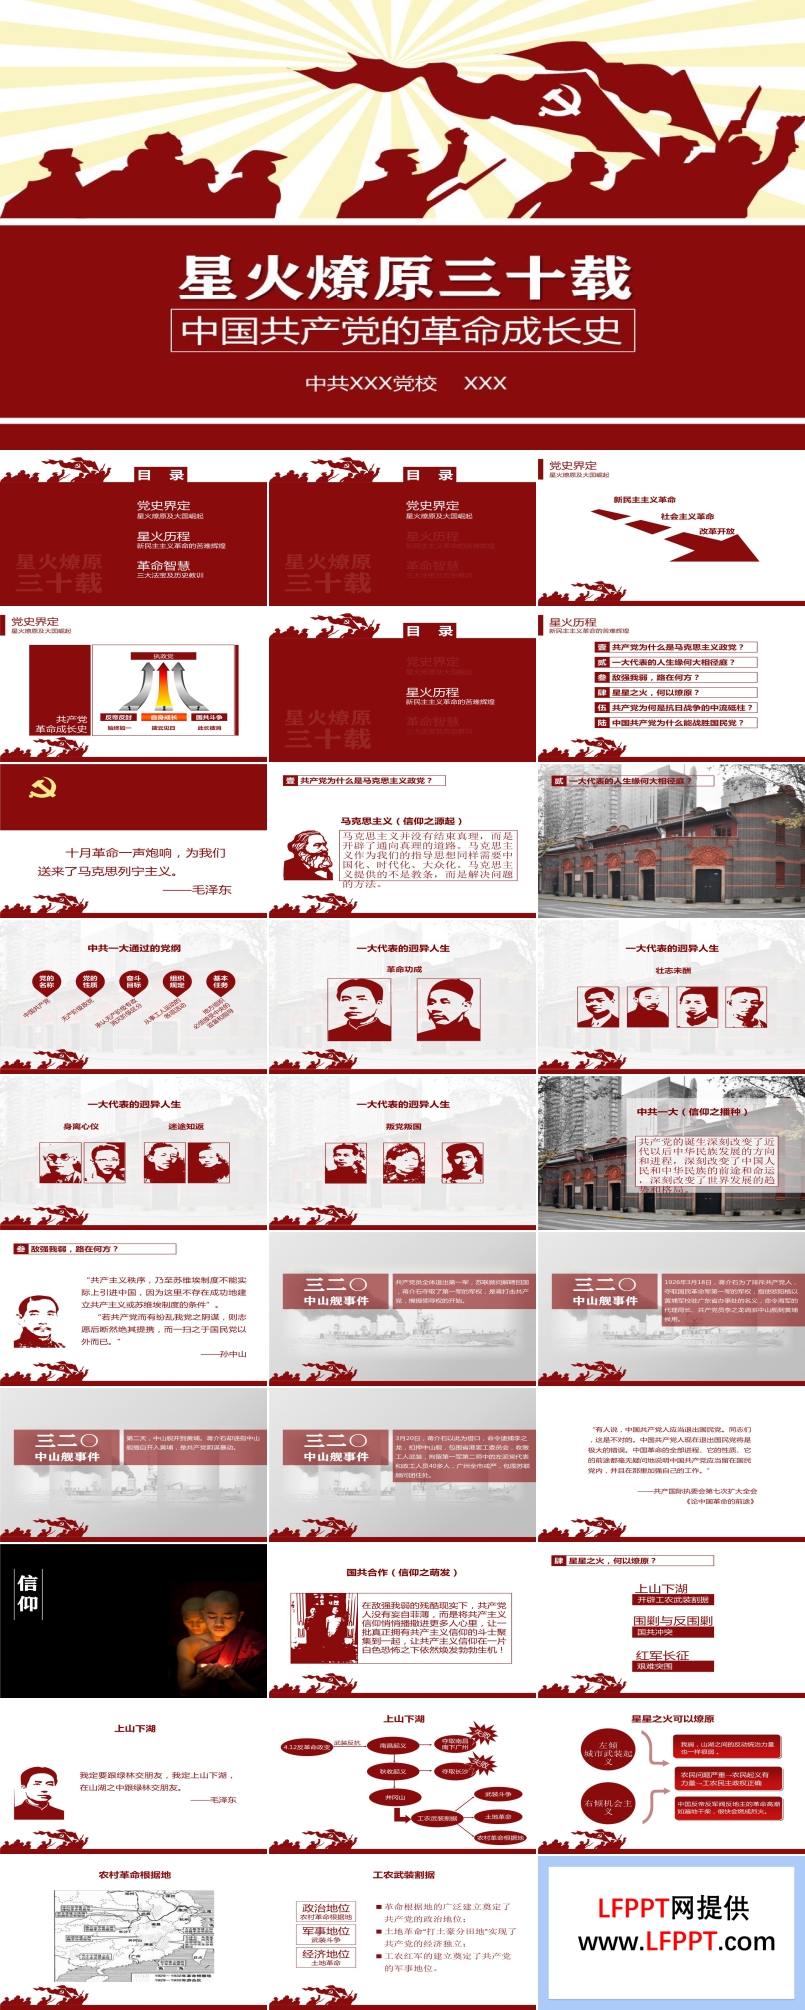 文化大革命风传统革命风格红白剪纸风格静态PPT模板